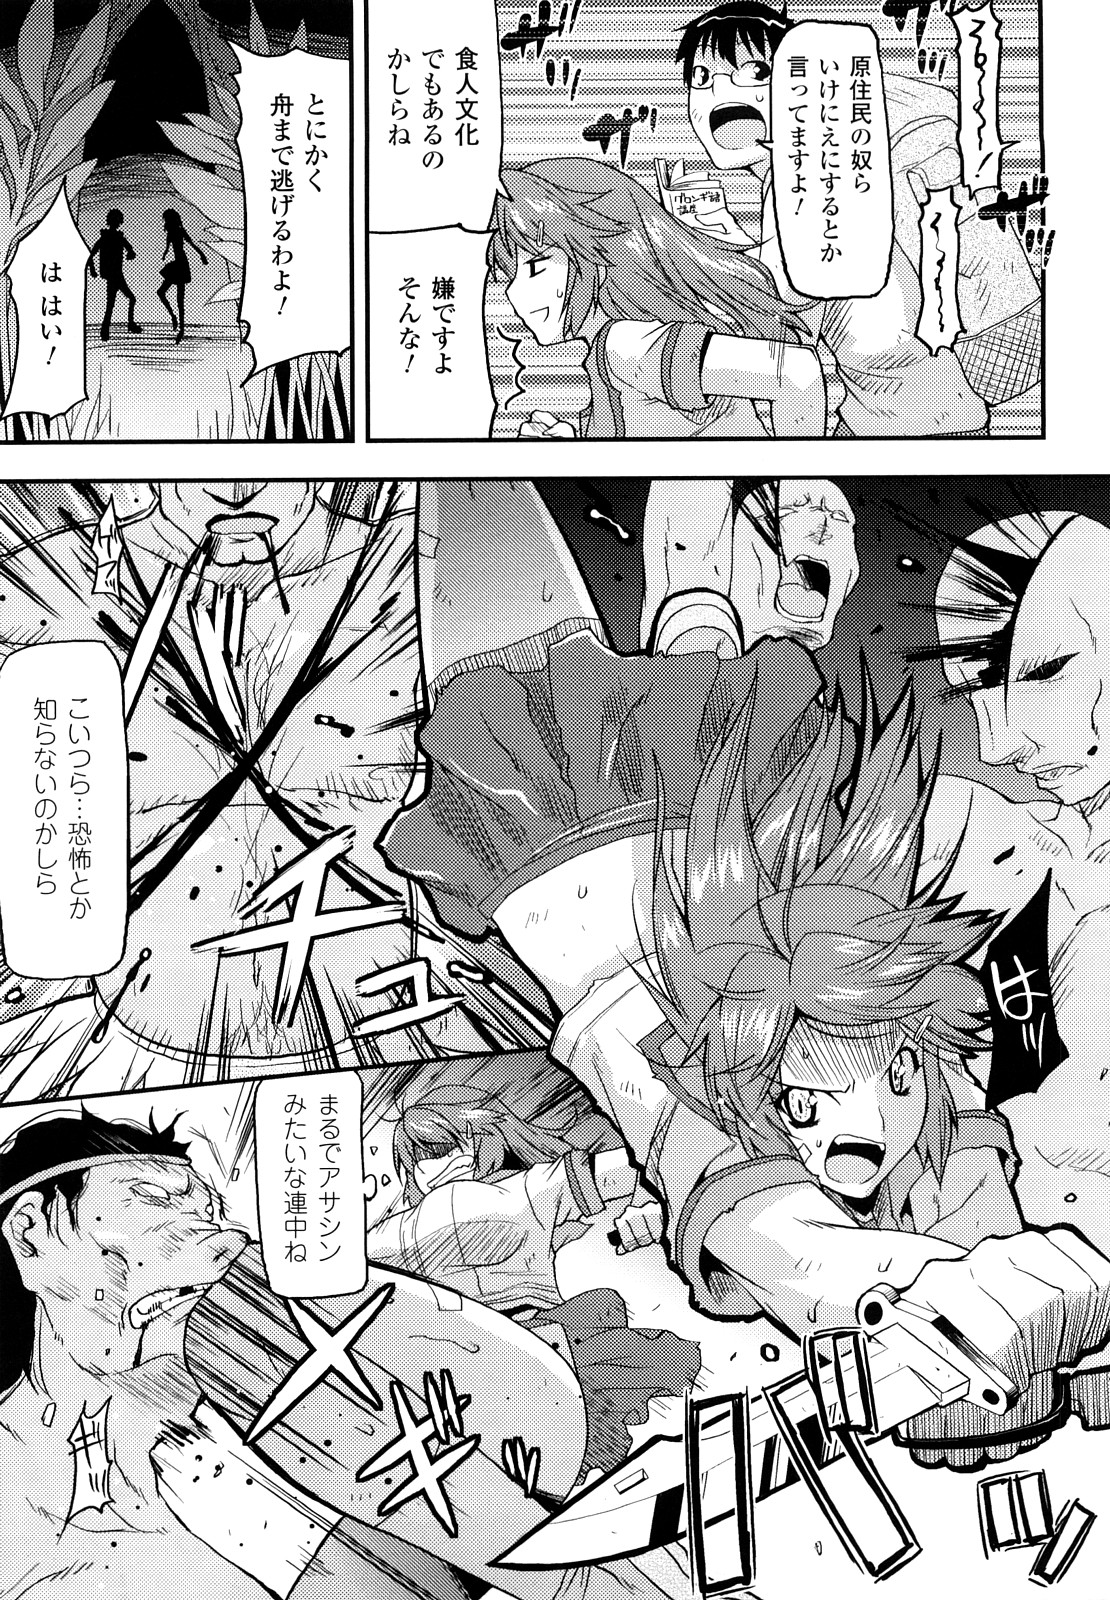 [Utamaro] Funi Puny Days page 23 full